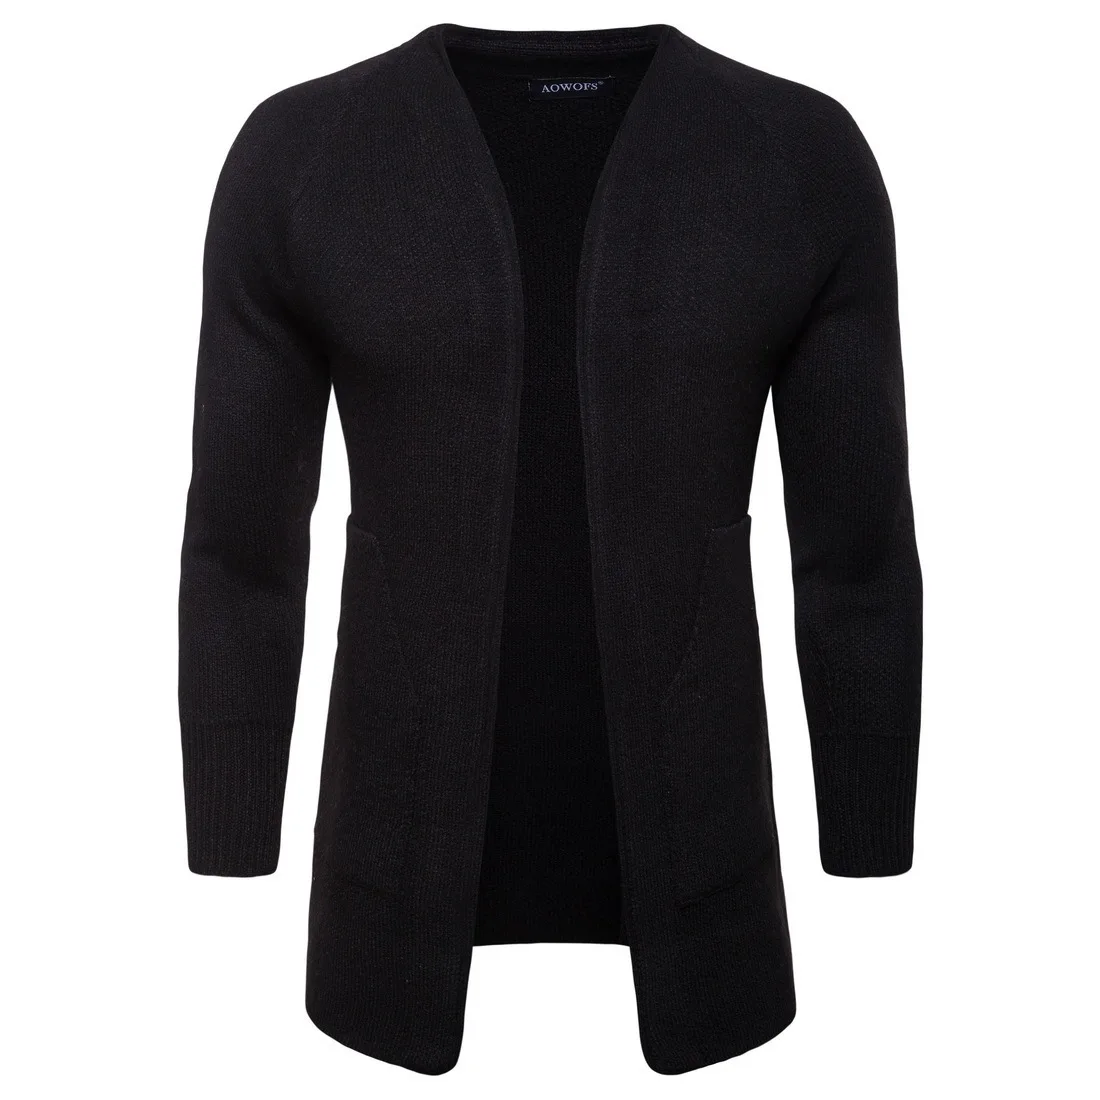 Новые осенние Вязание мужские Трикотаж свитера Кардиган Повседневное модный свитер длинный плащ 2 цвета - Цвет: black